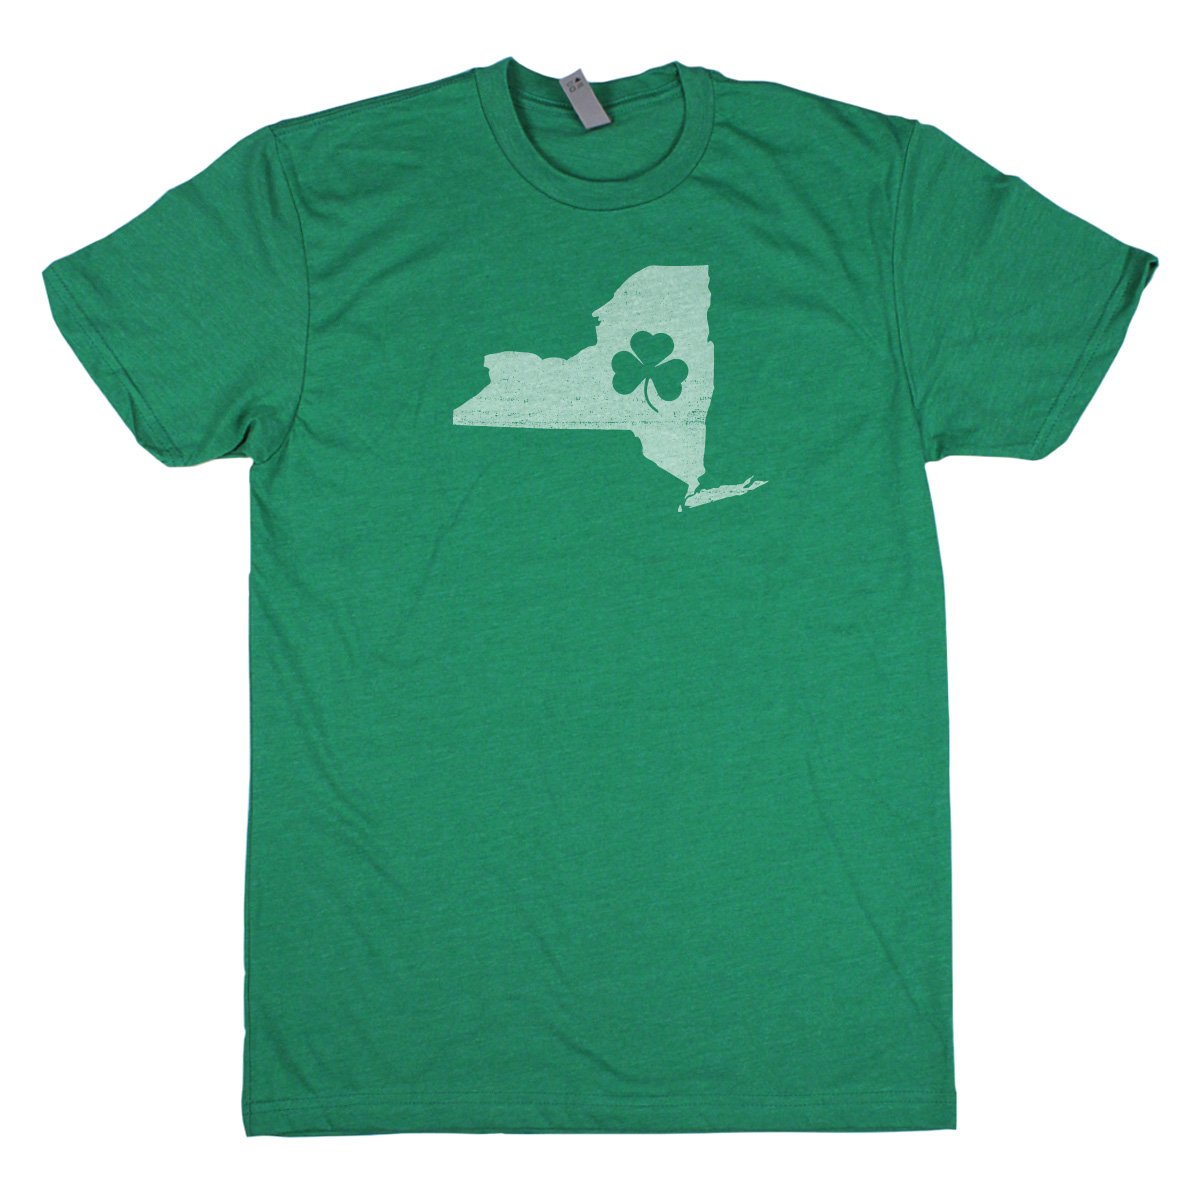 Shamrock Men's Unisex T-Shirt - New Jersey